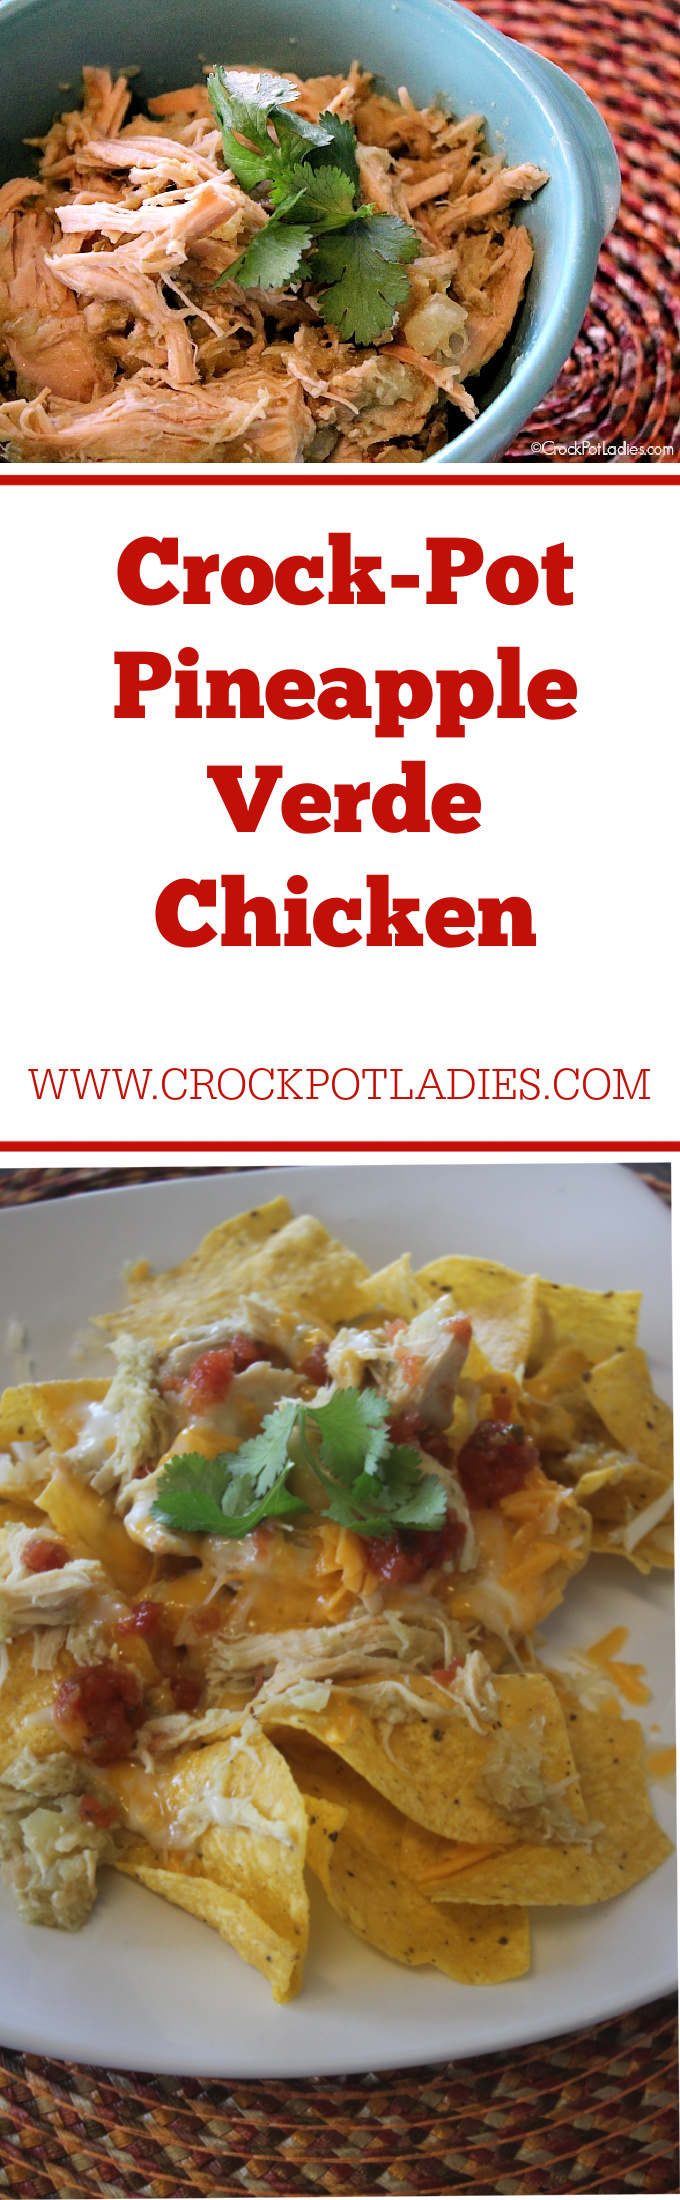 Crock-Pot Pineapple Verde Chicken